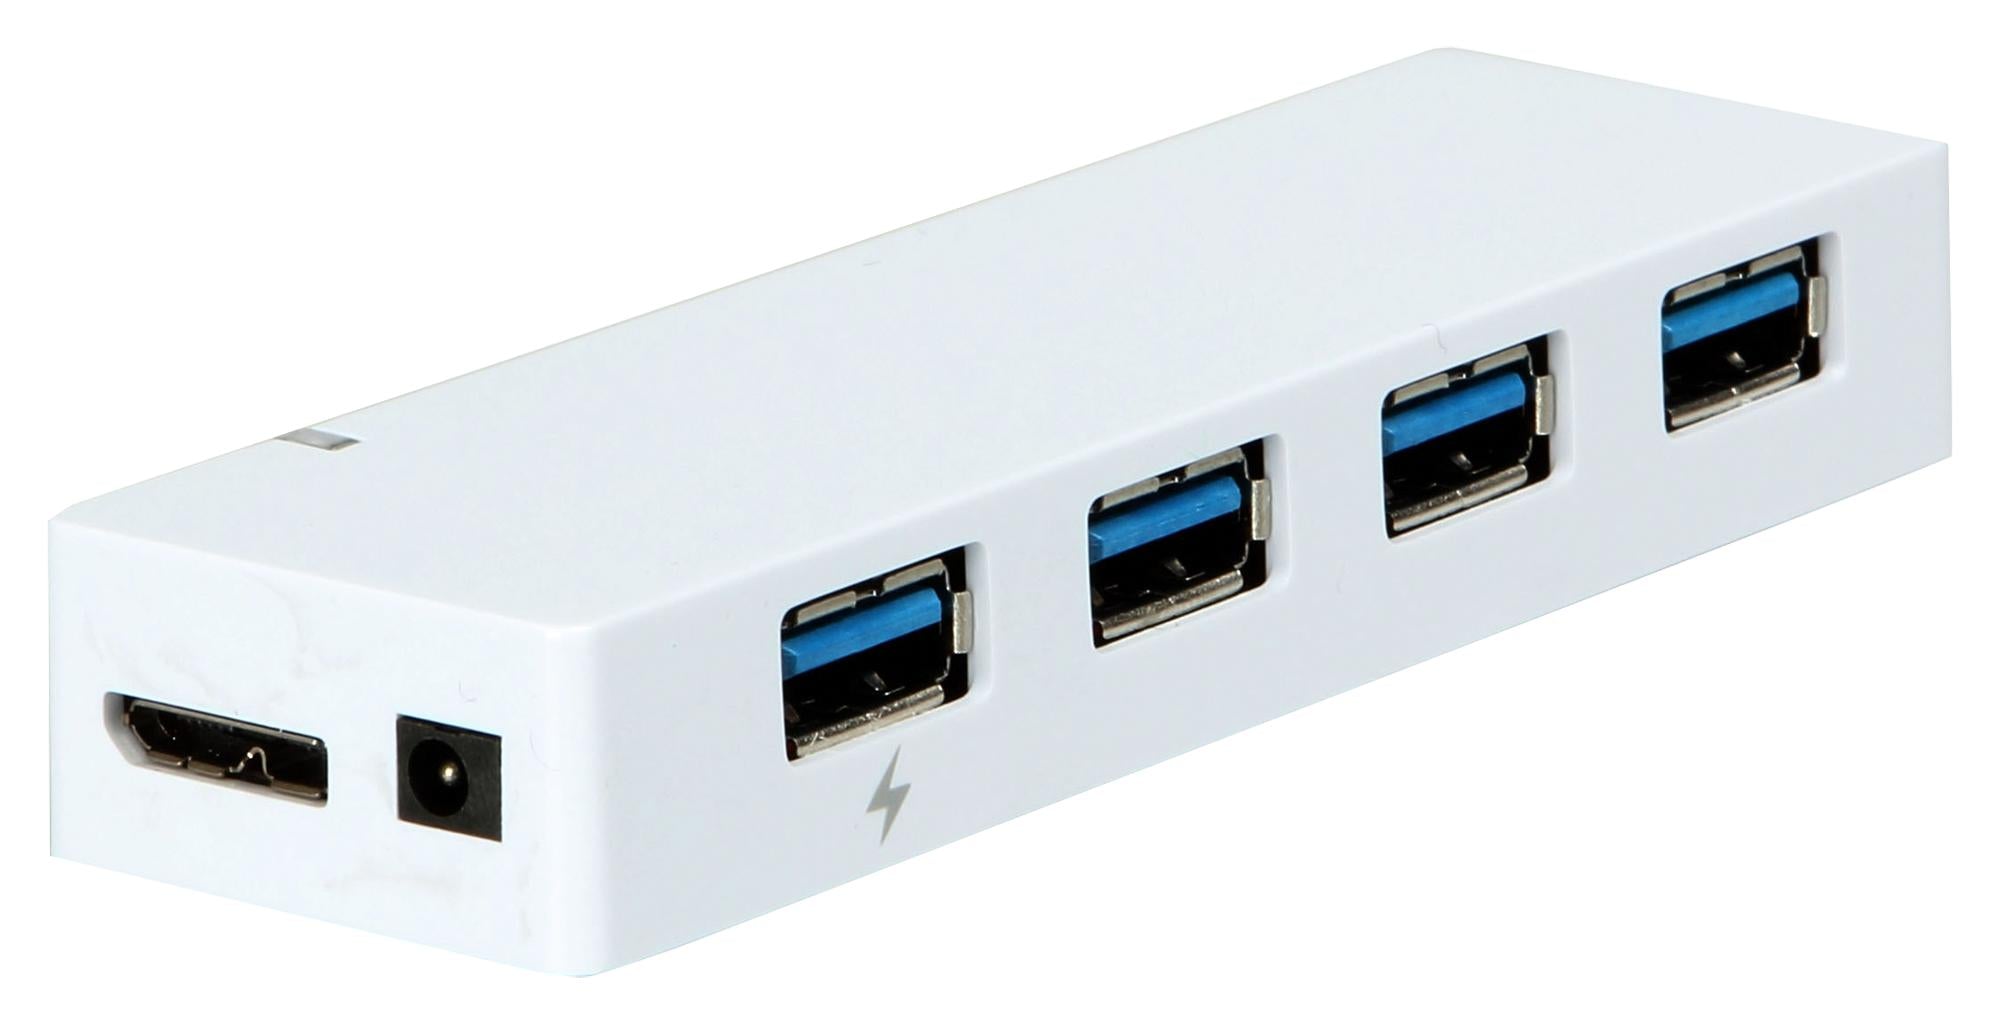 U3-4HUB. USB 3.0 HUB, BUS POWERED, 4PORT MULTICOMP PRO